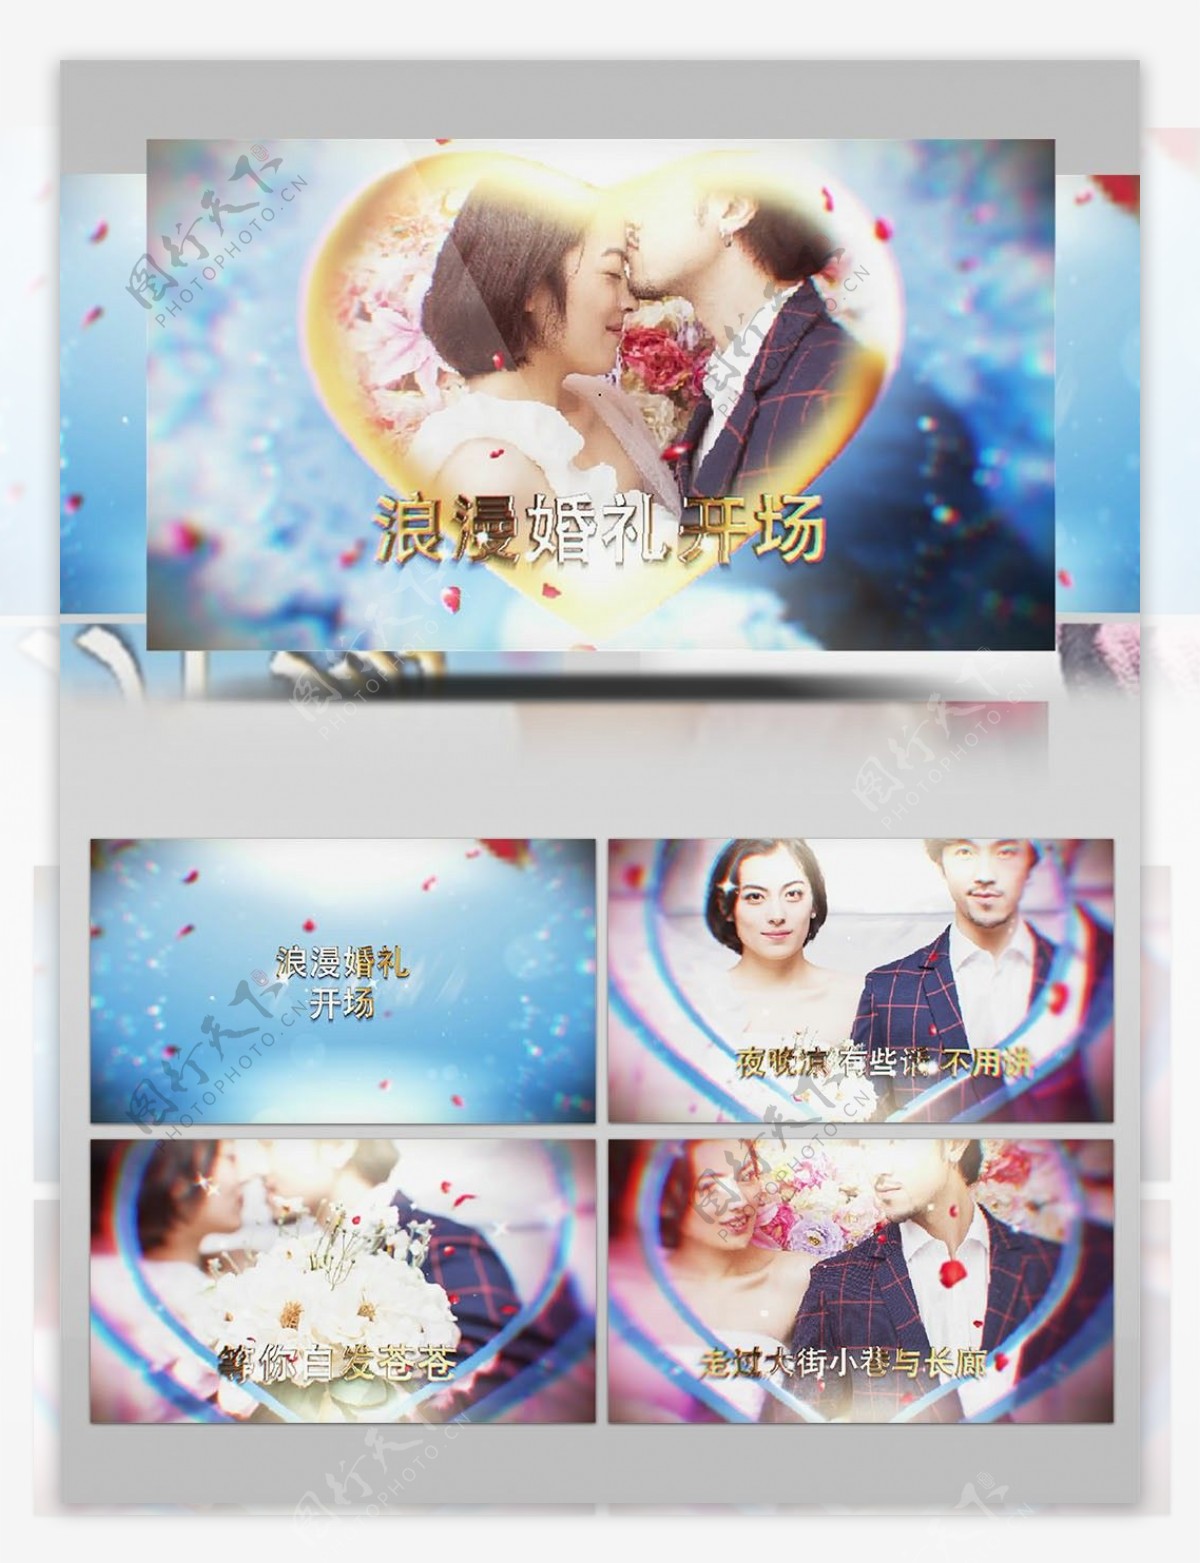 唯美蓝色系浪漫婚礼开场图像展示AE模板